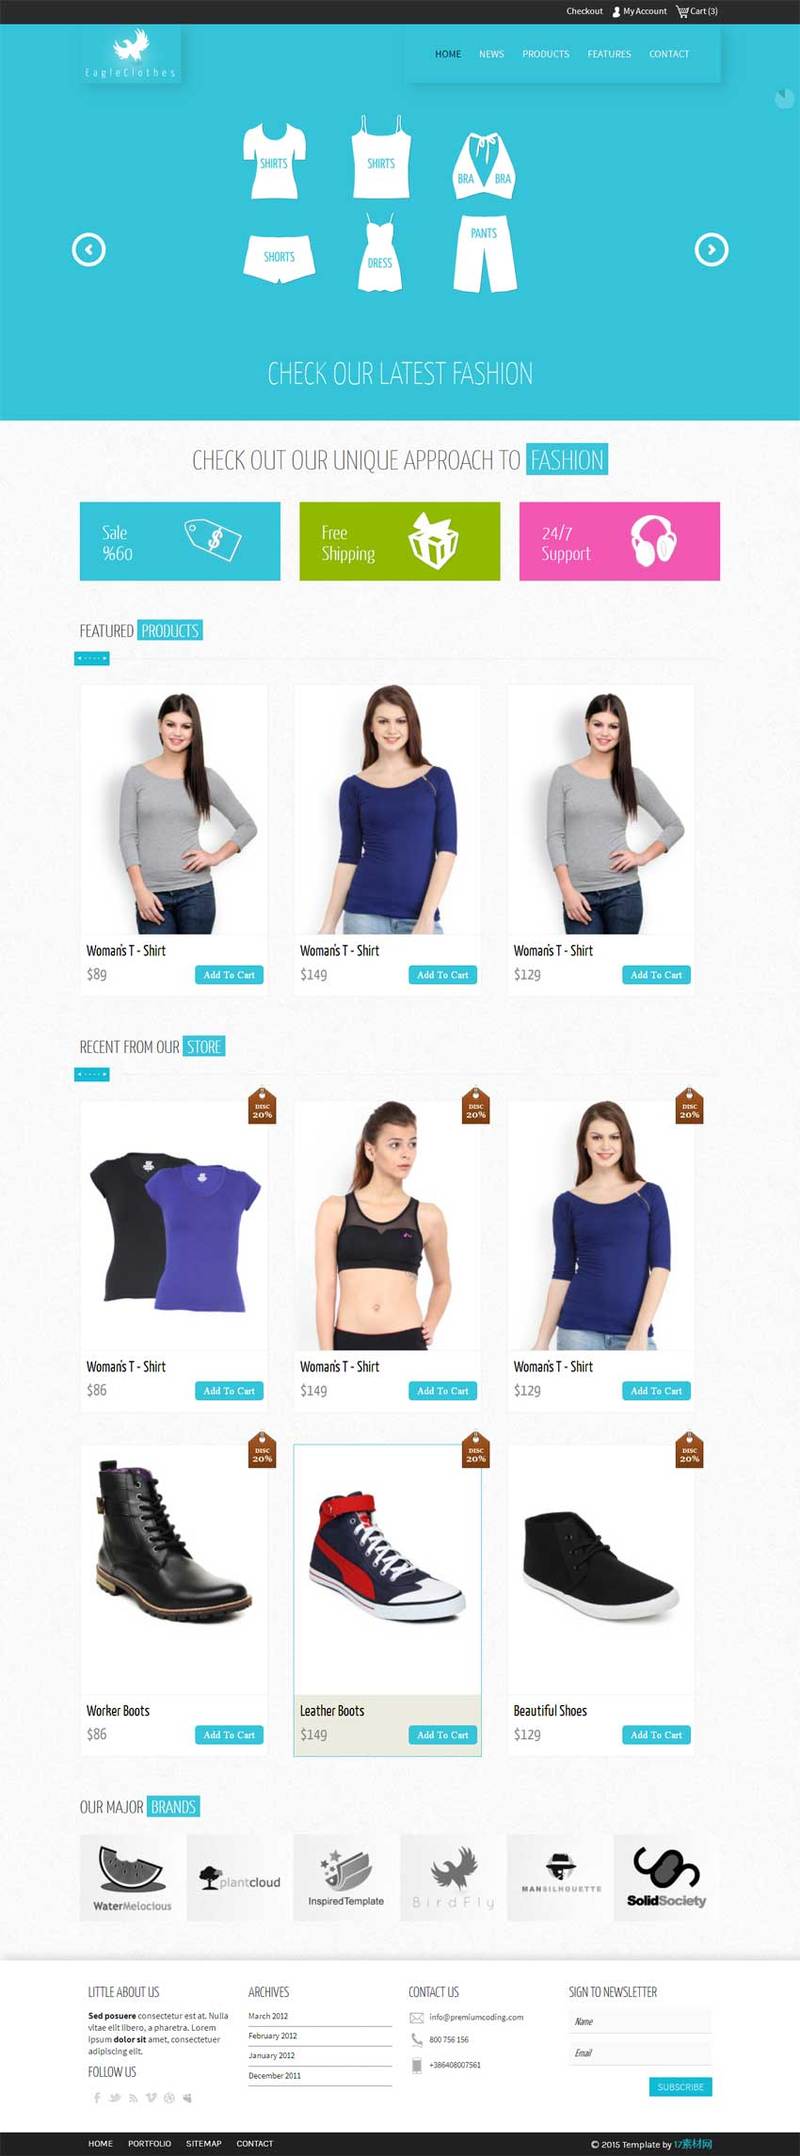 服装购物网站欧美风格的模板下载